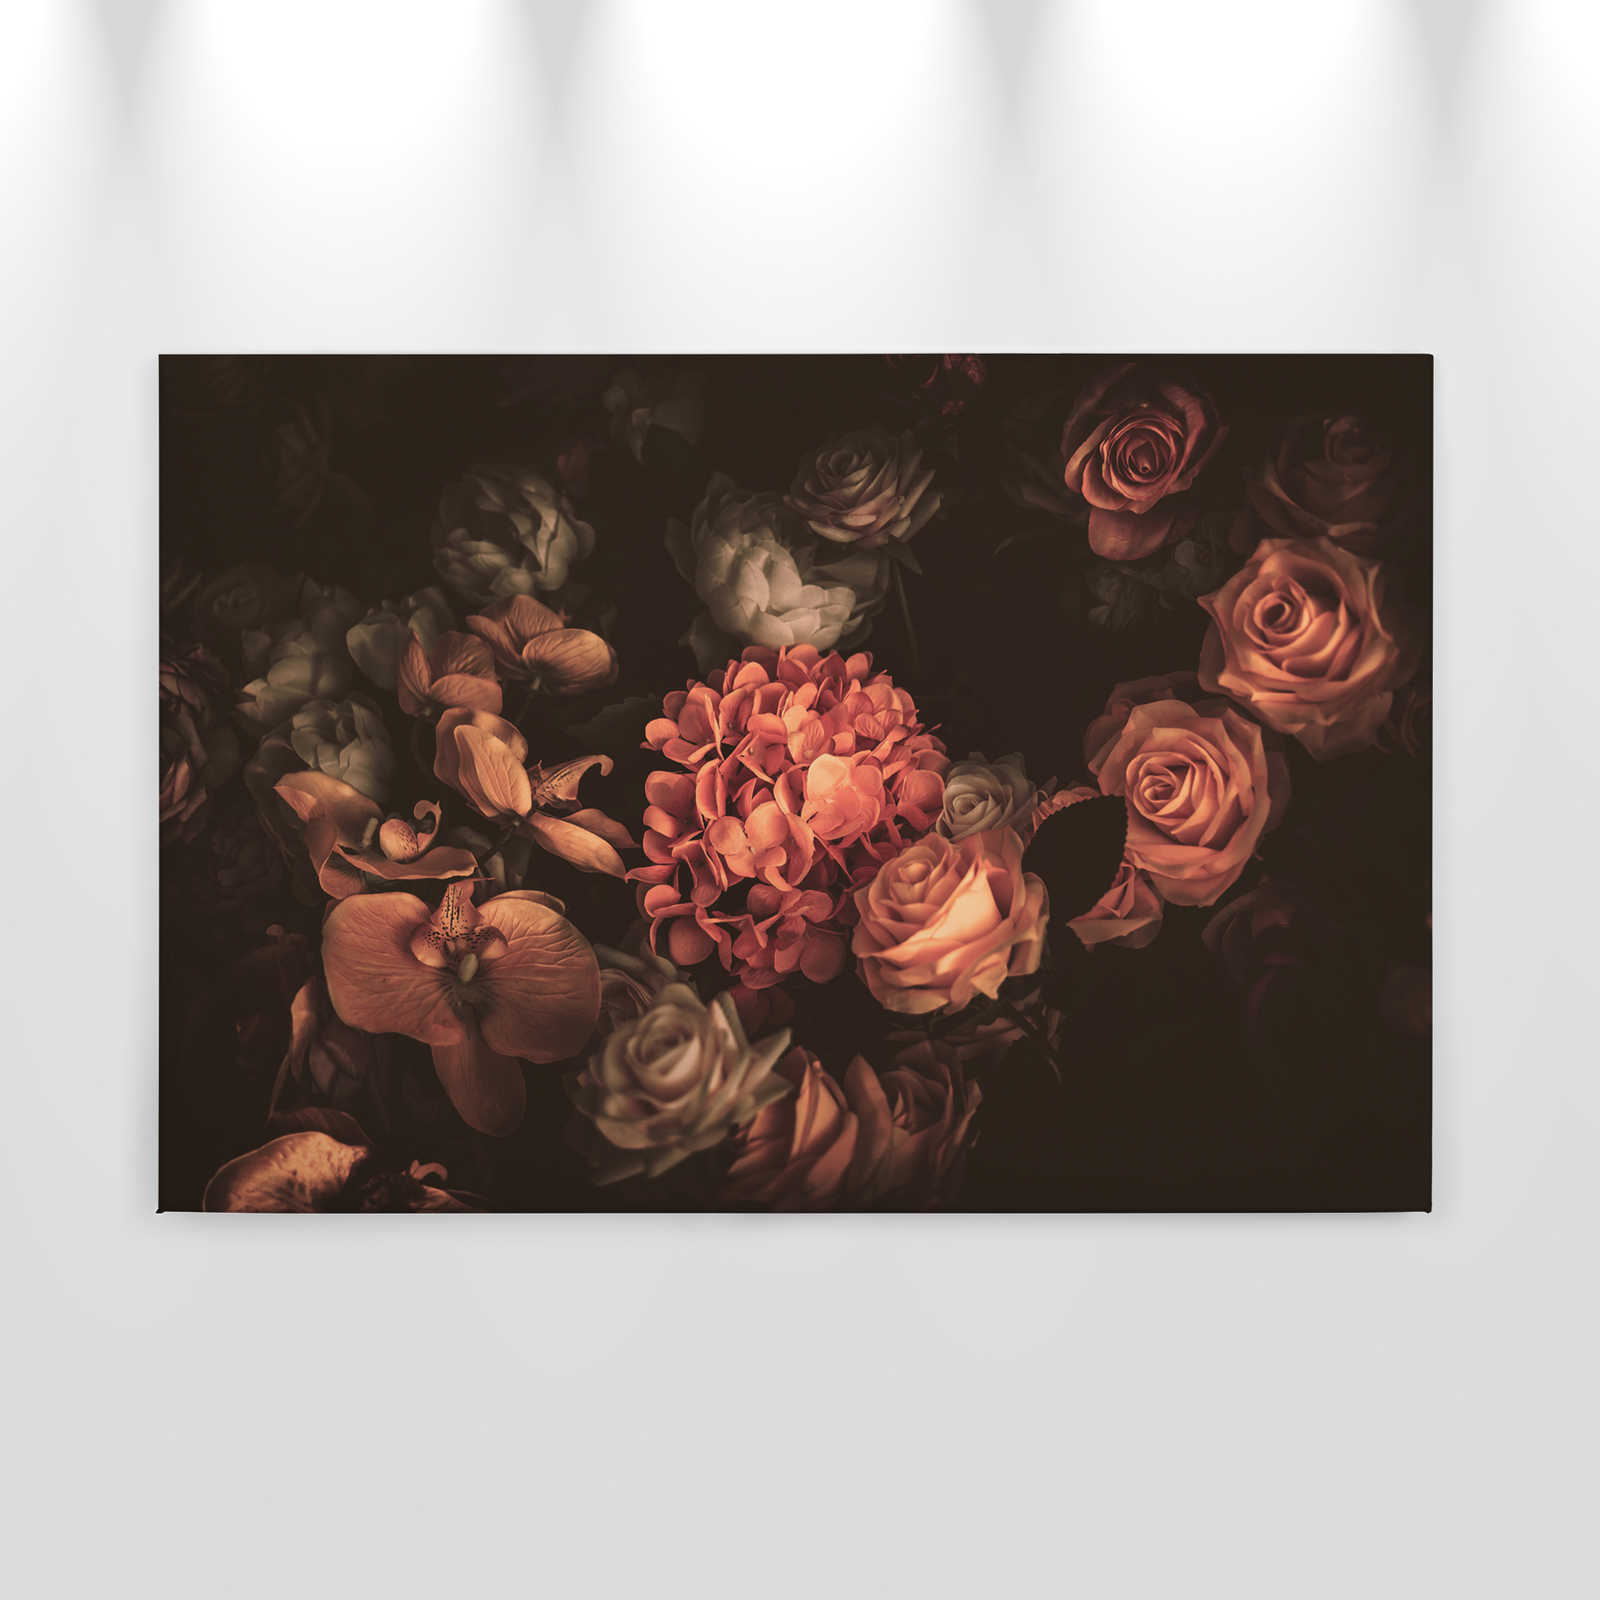             Romantische Leinwand mit Blumenstrauß – 0,90 m x 0,60 m
        